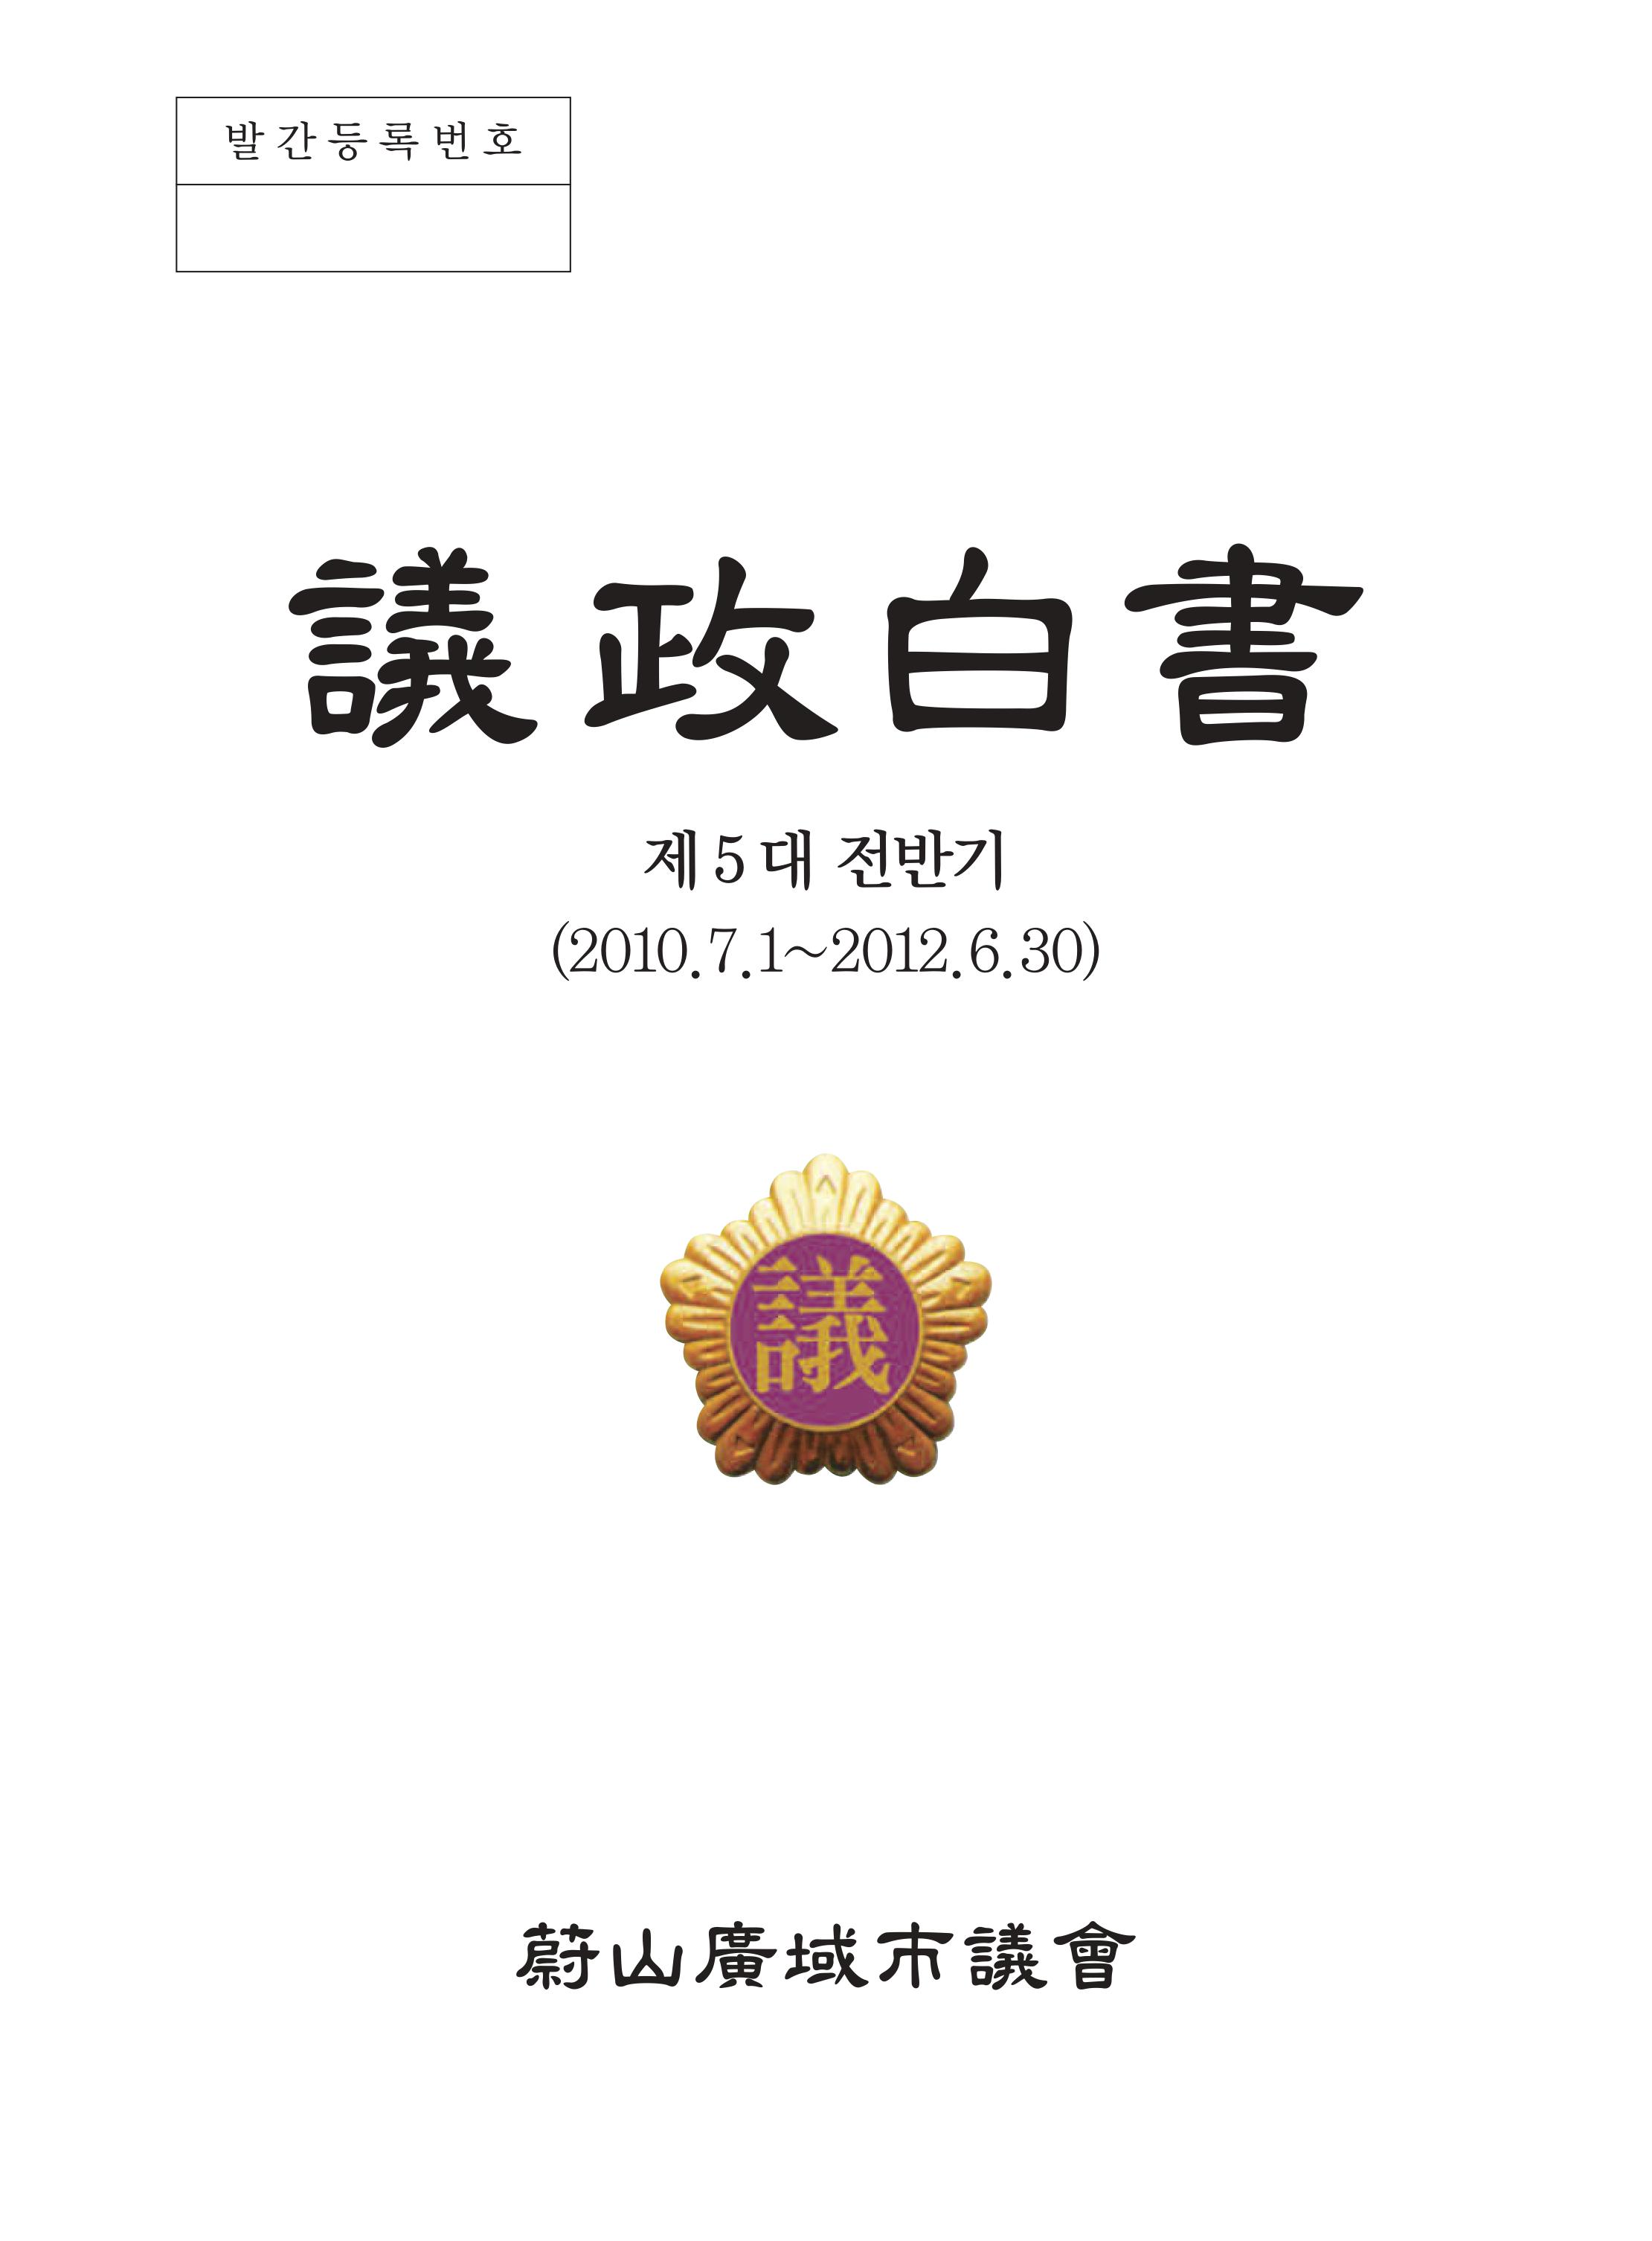 제 5대 후반기 의정백서 (2012.7.1~2014.6.30) 표지